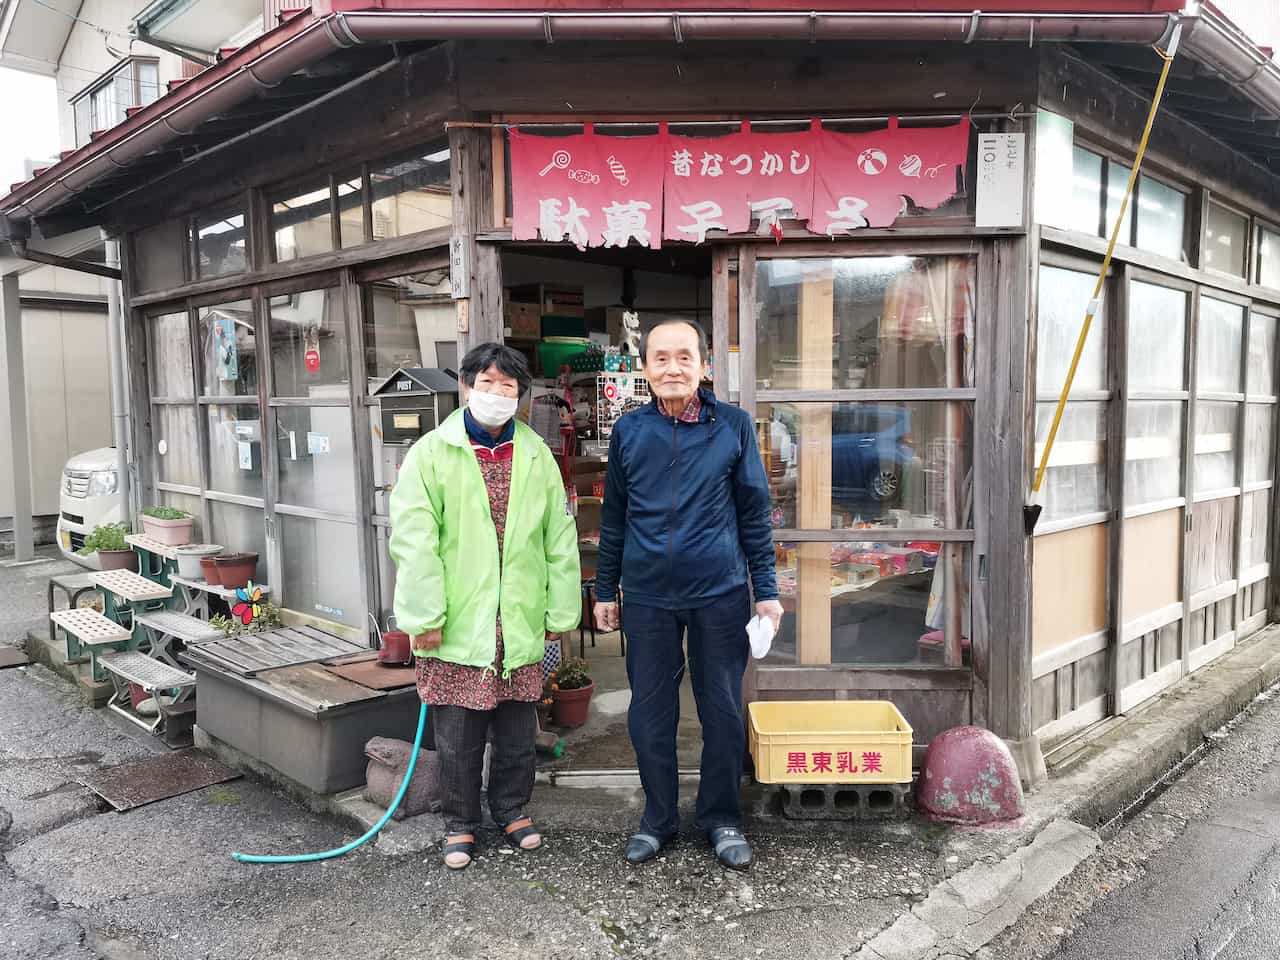 いながきの駄菓子屋探訪80富山県新田駄菓子屋9